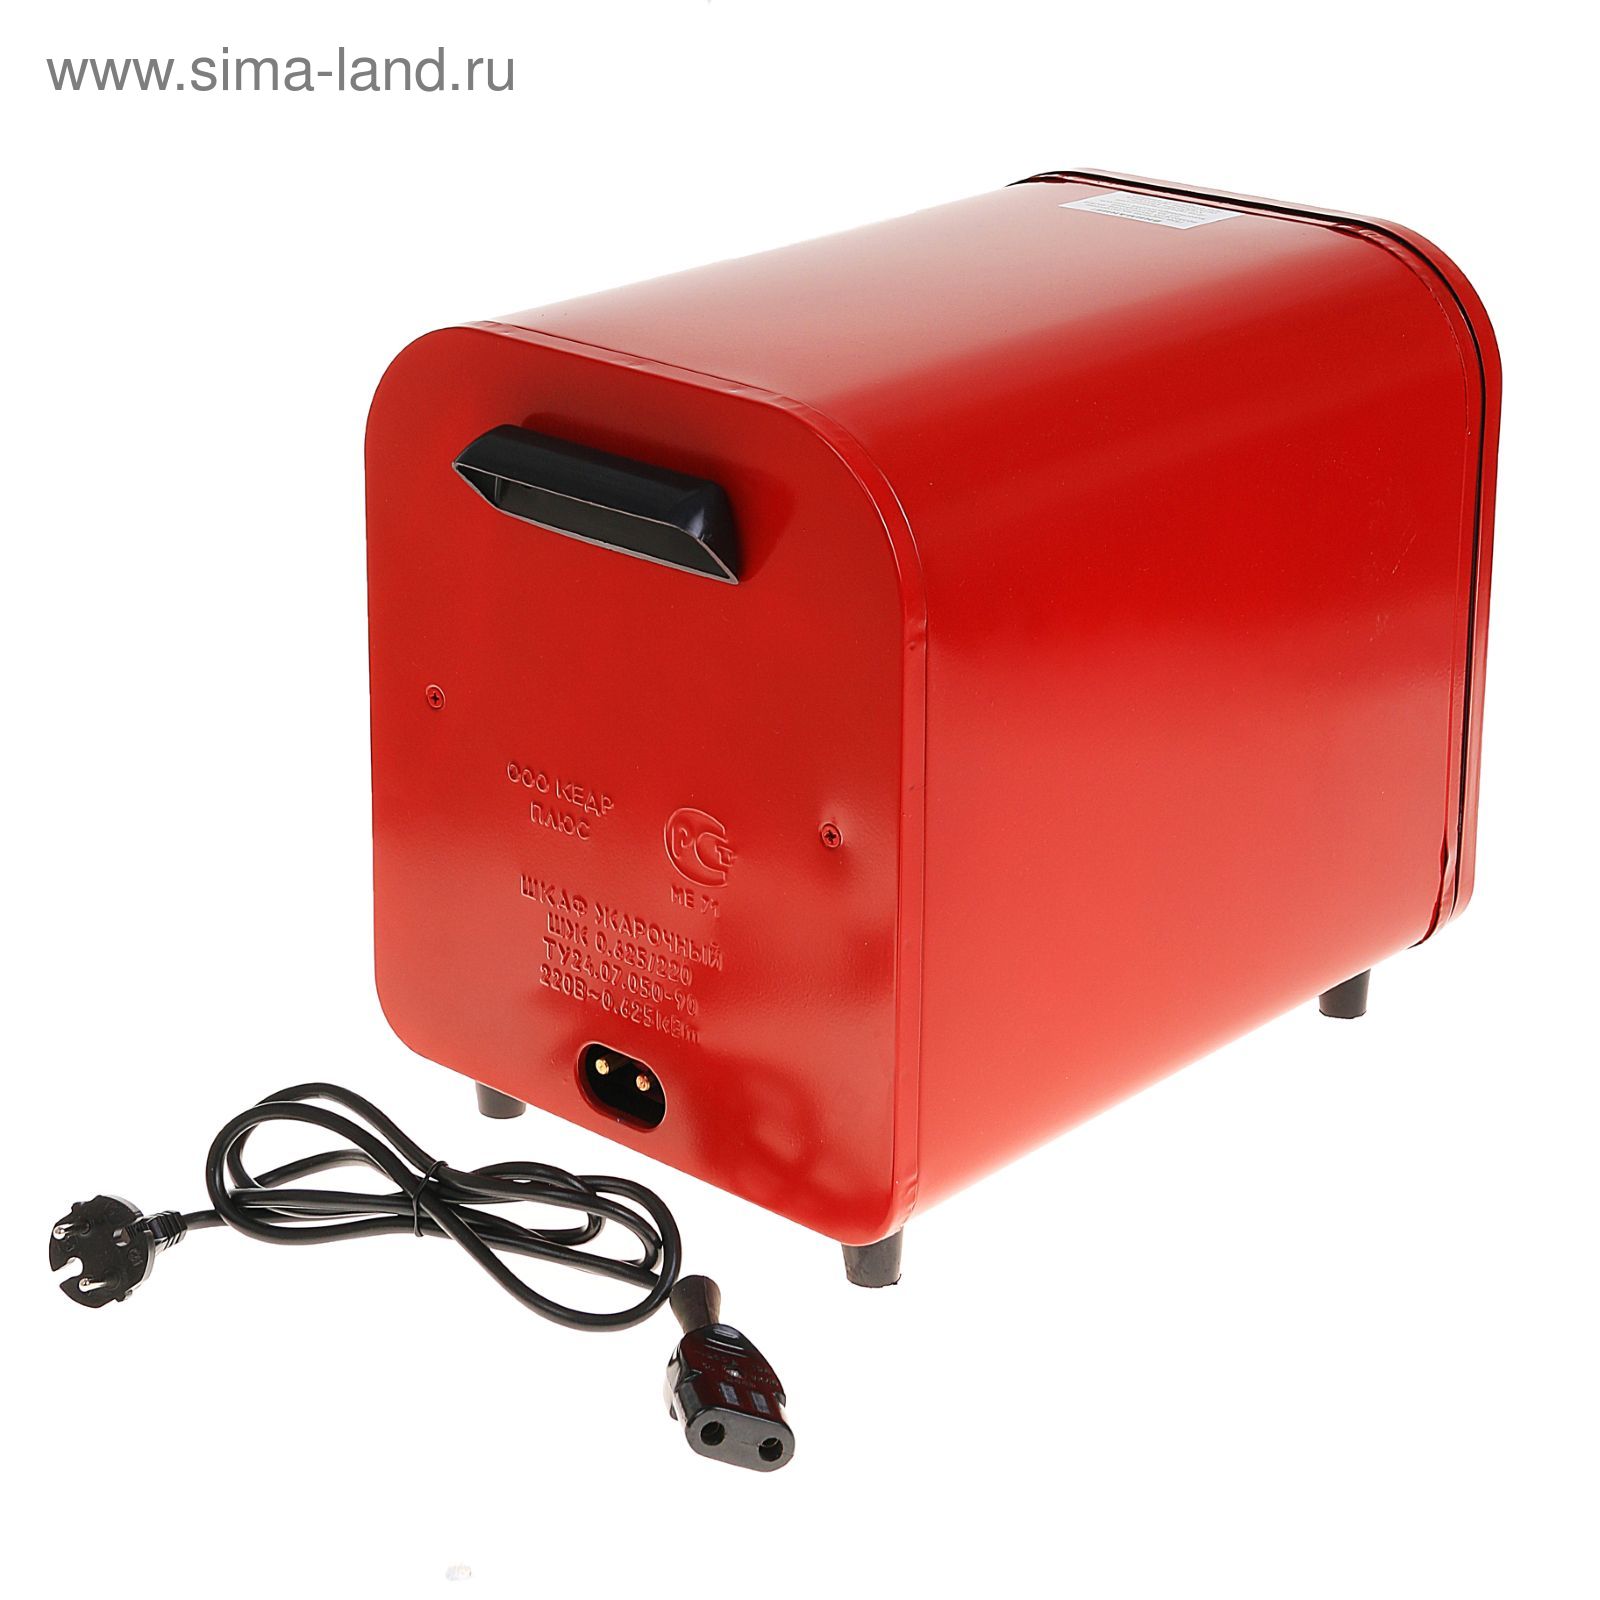 Мини-печь кедр ШЖ-0,625/220, красный